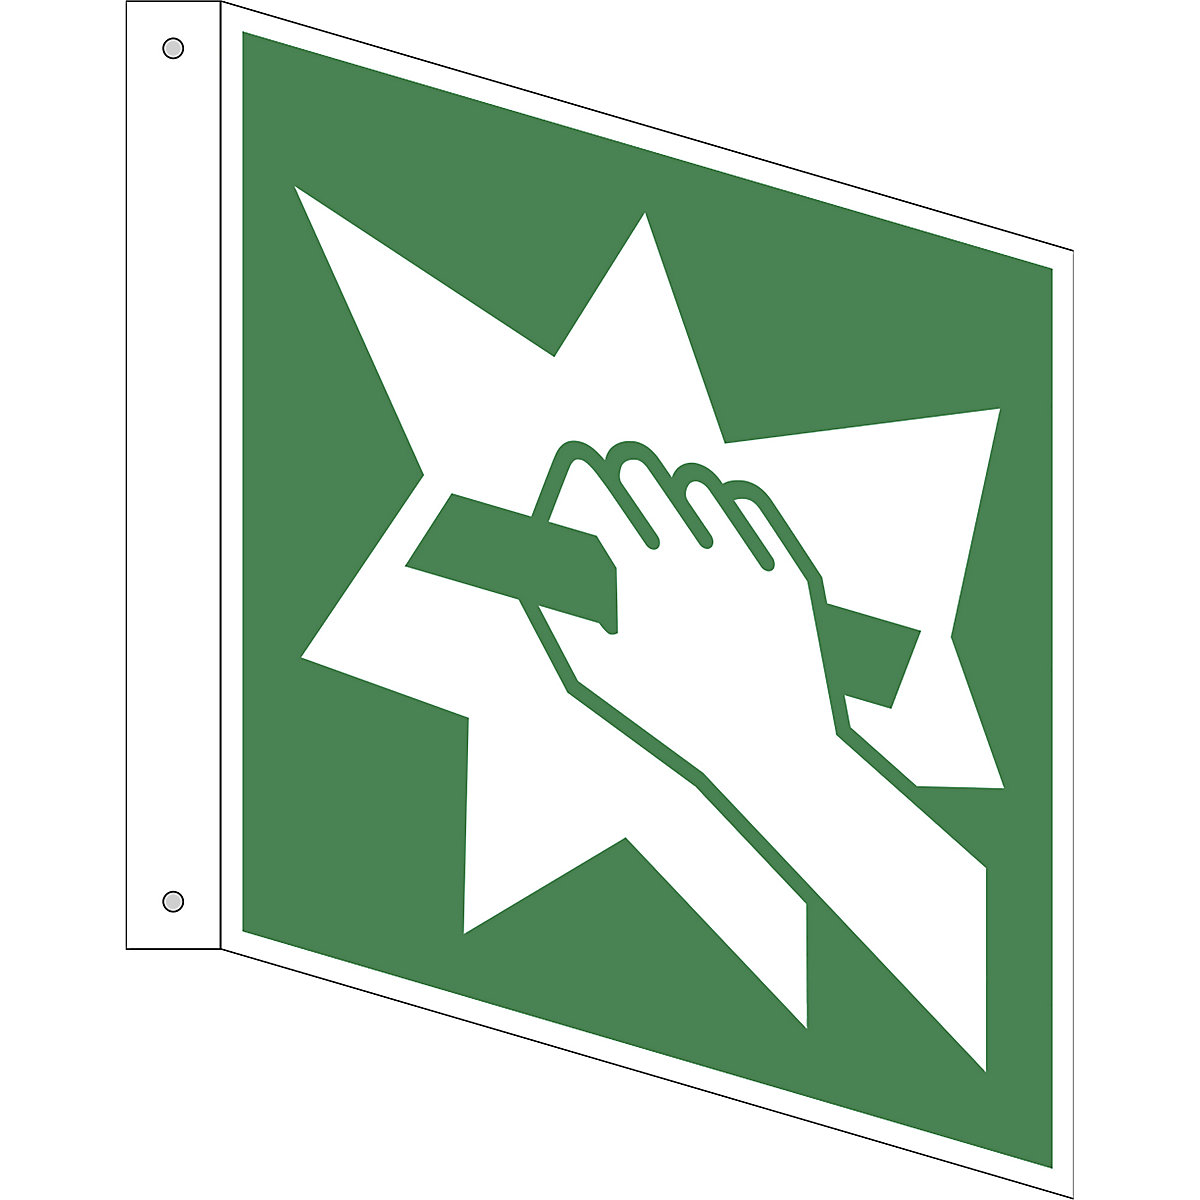 Úniková značka, Zařízení pro nouzový východ, bal.j. 10 ks, plast, vlajkový štítek, 200 x 200 mm-1